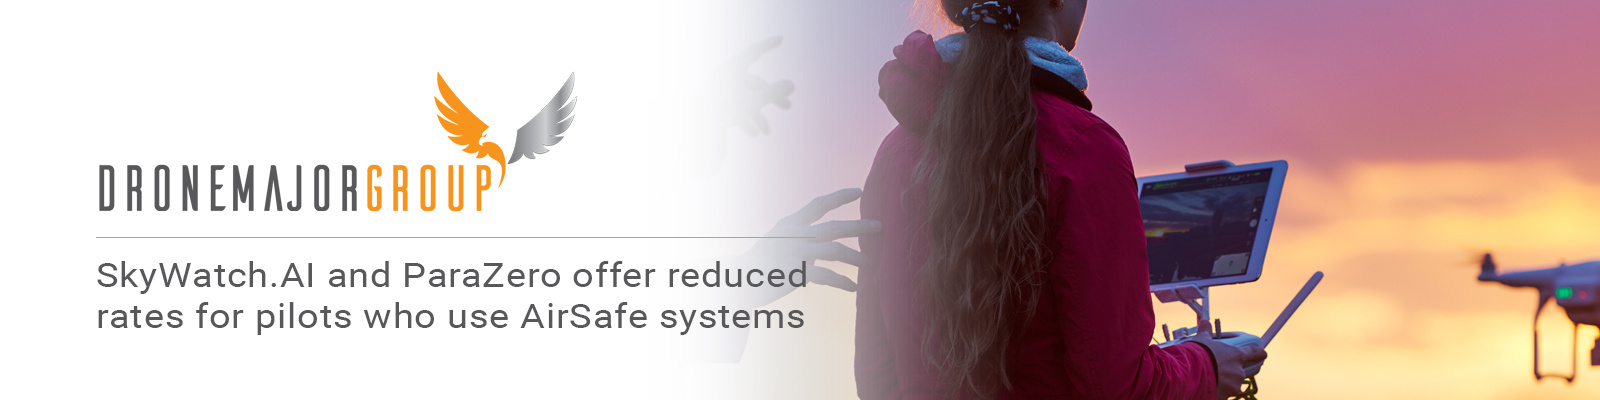 20%-25% off SafeAir systems for DJI Mavic and DJI Phantom series